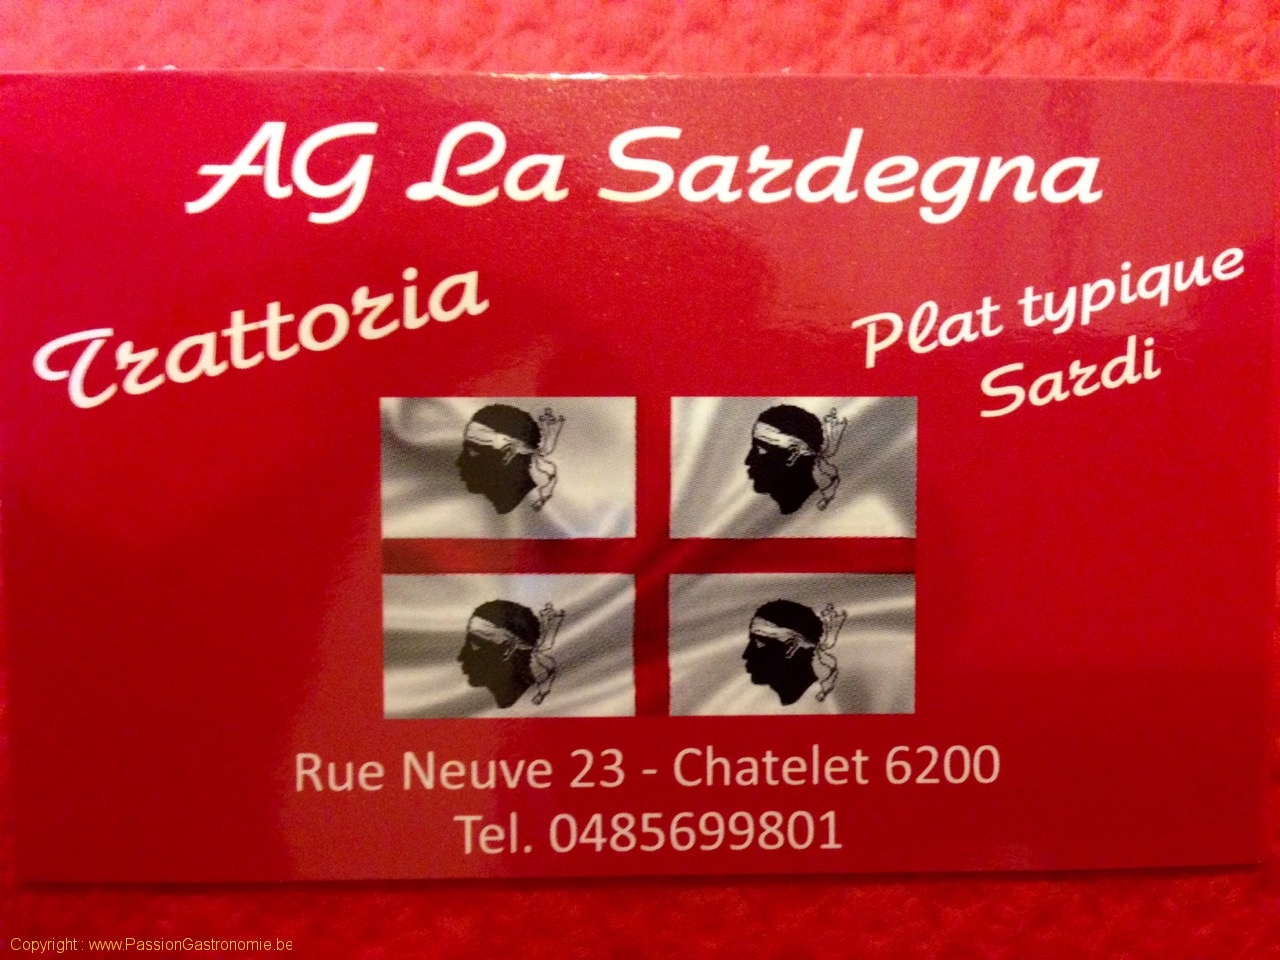 Restaurant Trattoria AG La Sardegna - Carte de visite